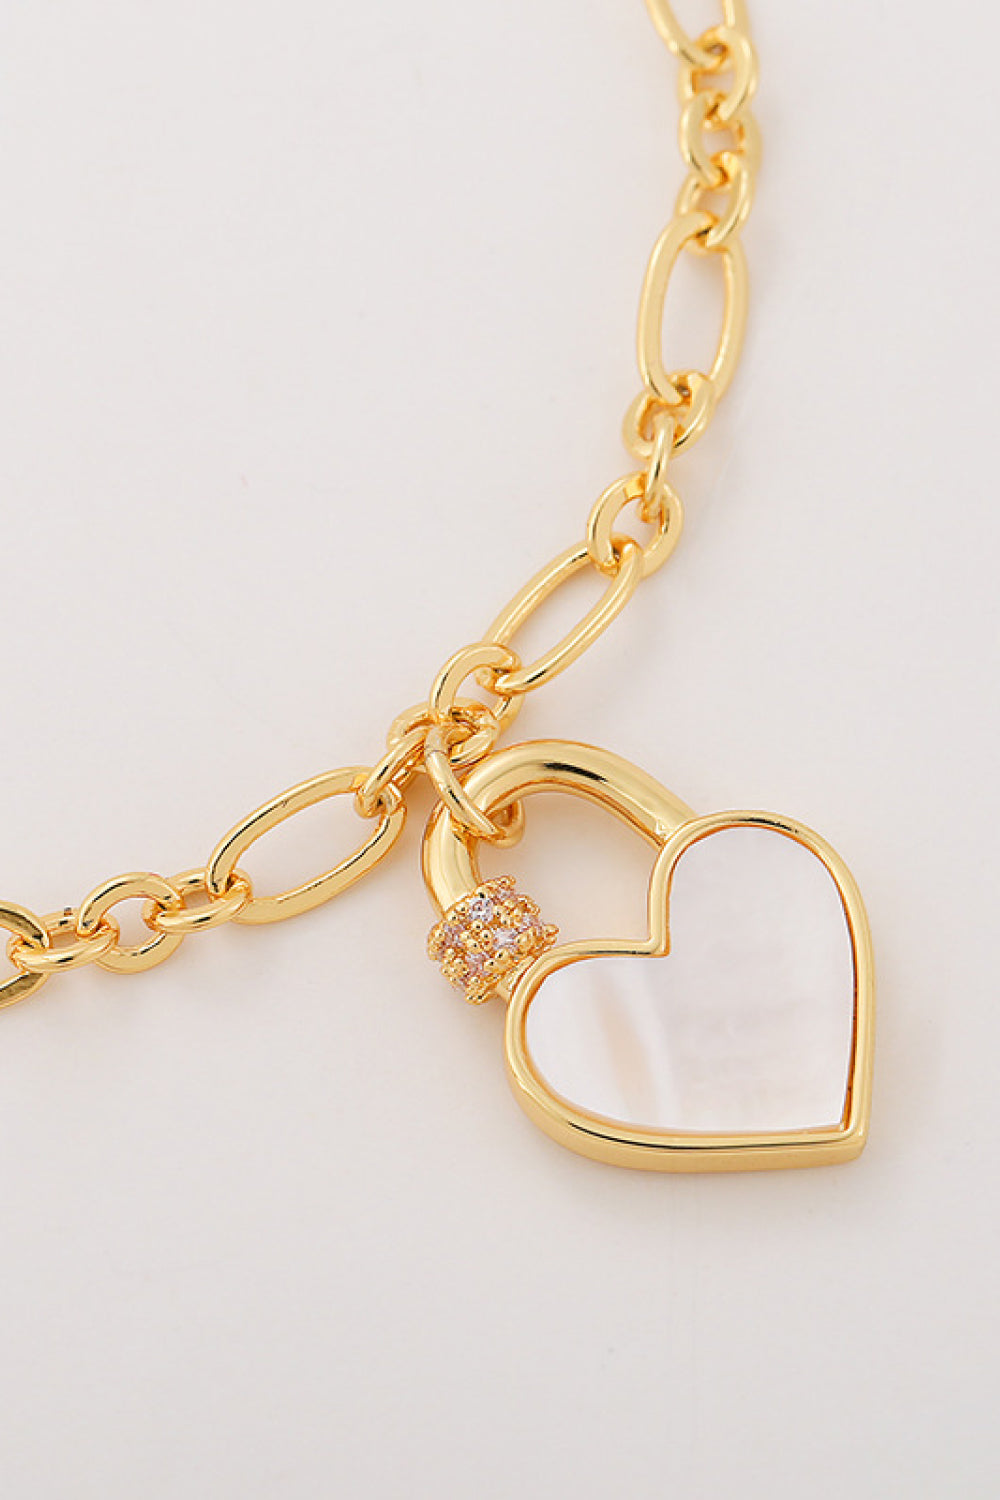 Heart Lock Charm Bracelet - Kawaii Stop - Bracelet, Bracelets, Ken, Ship From Overseas